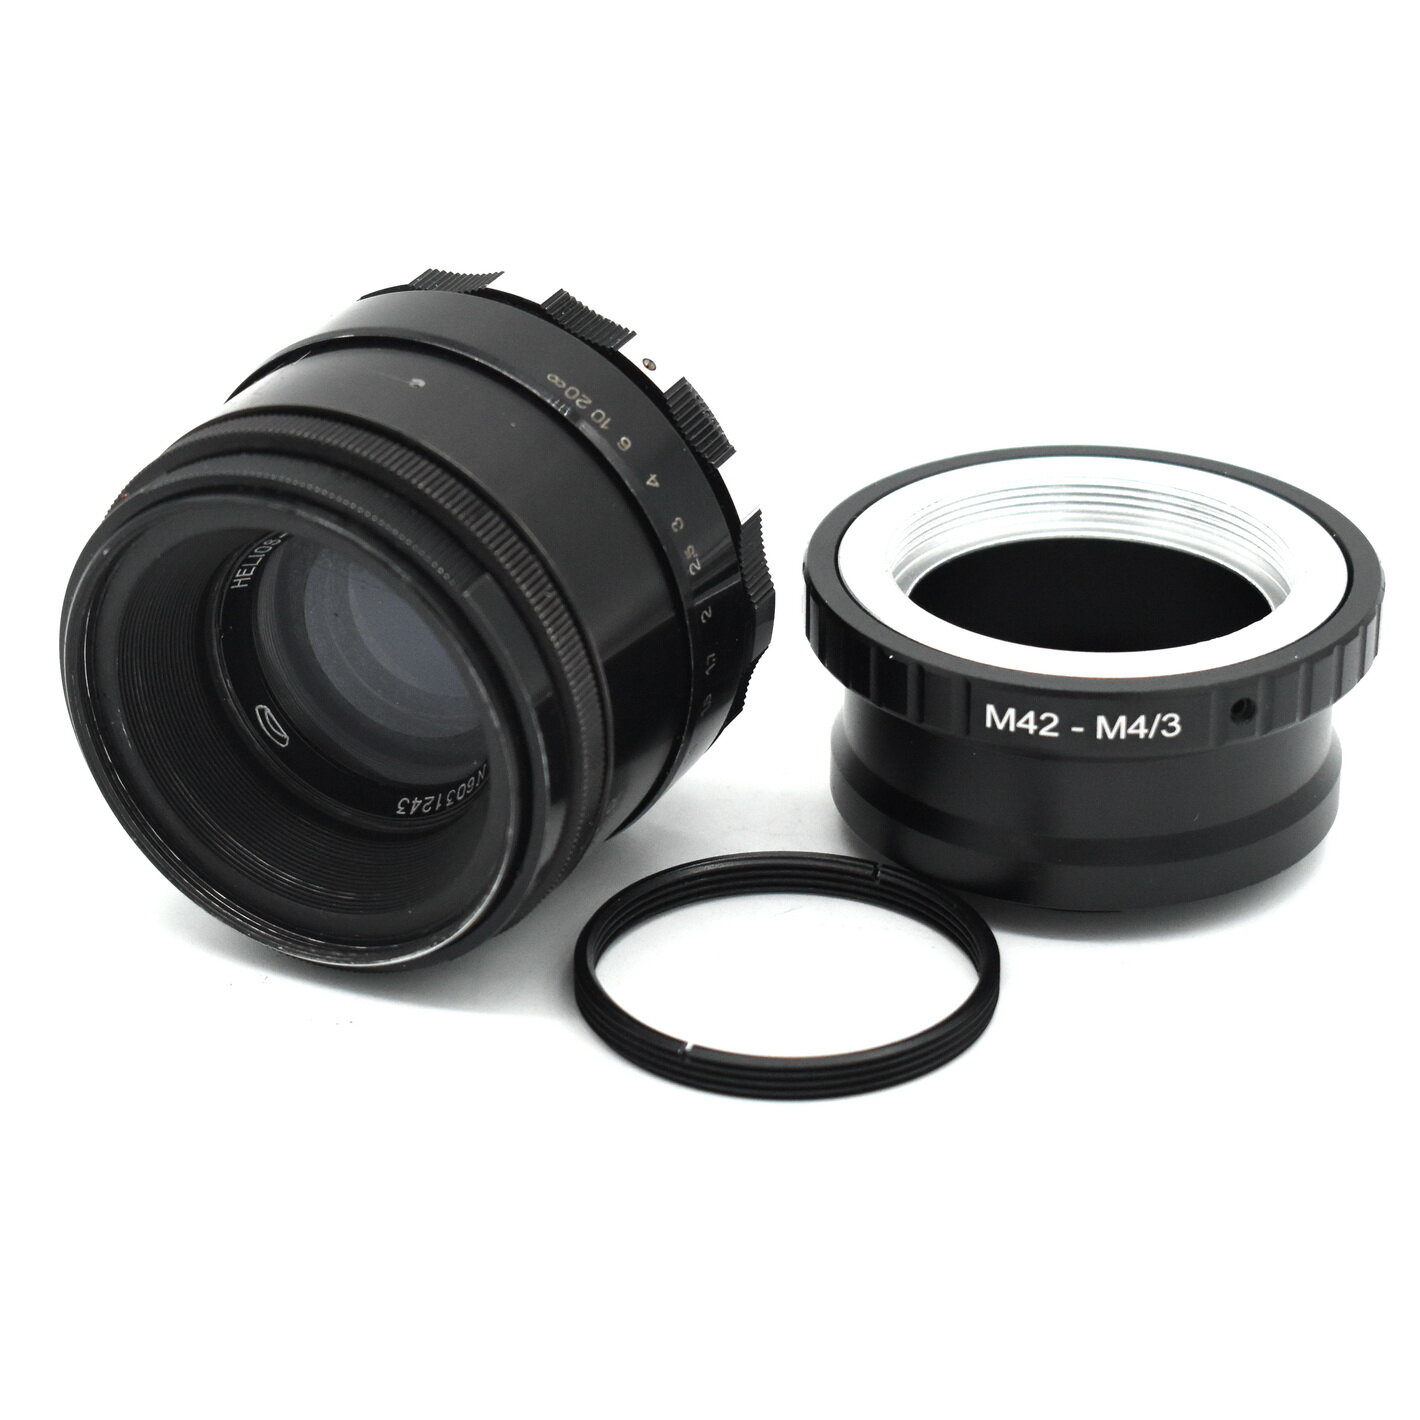 Светосильный объектив Гелиос-44М 2/58 new для фотокамер Micro 4/3 красивое боке